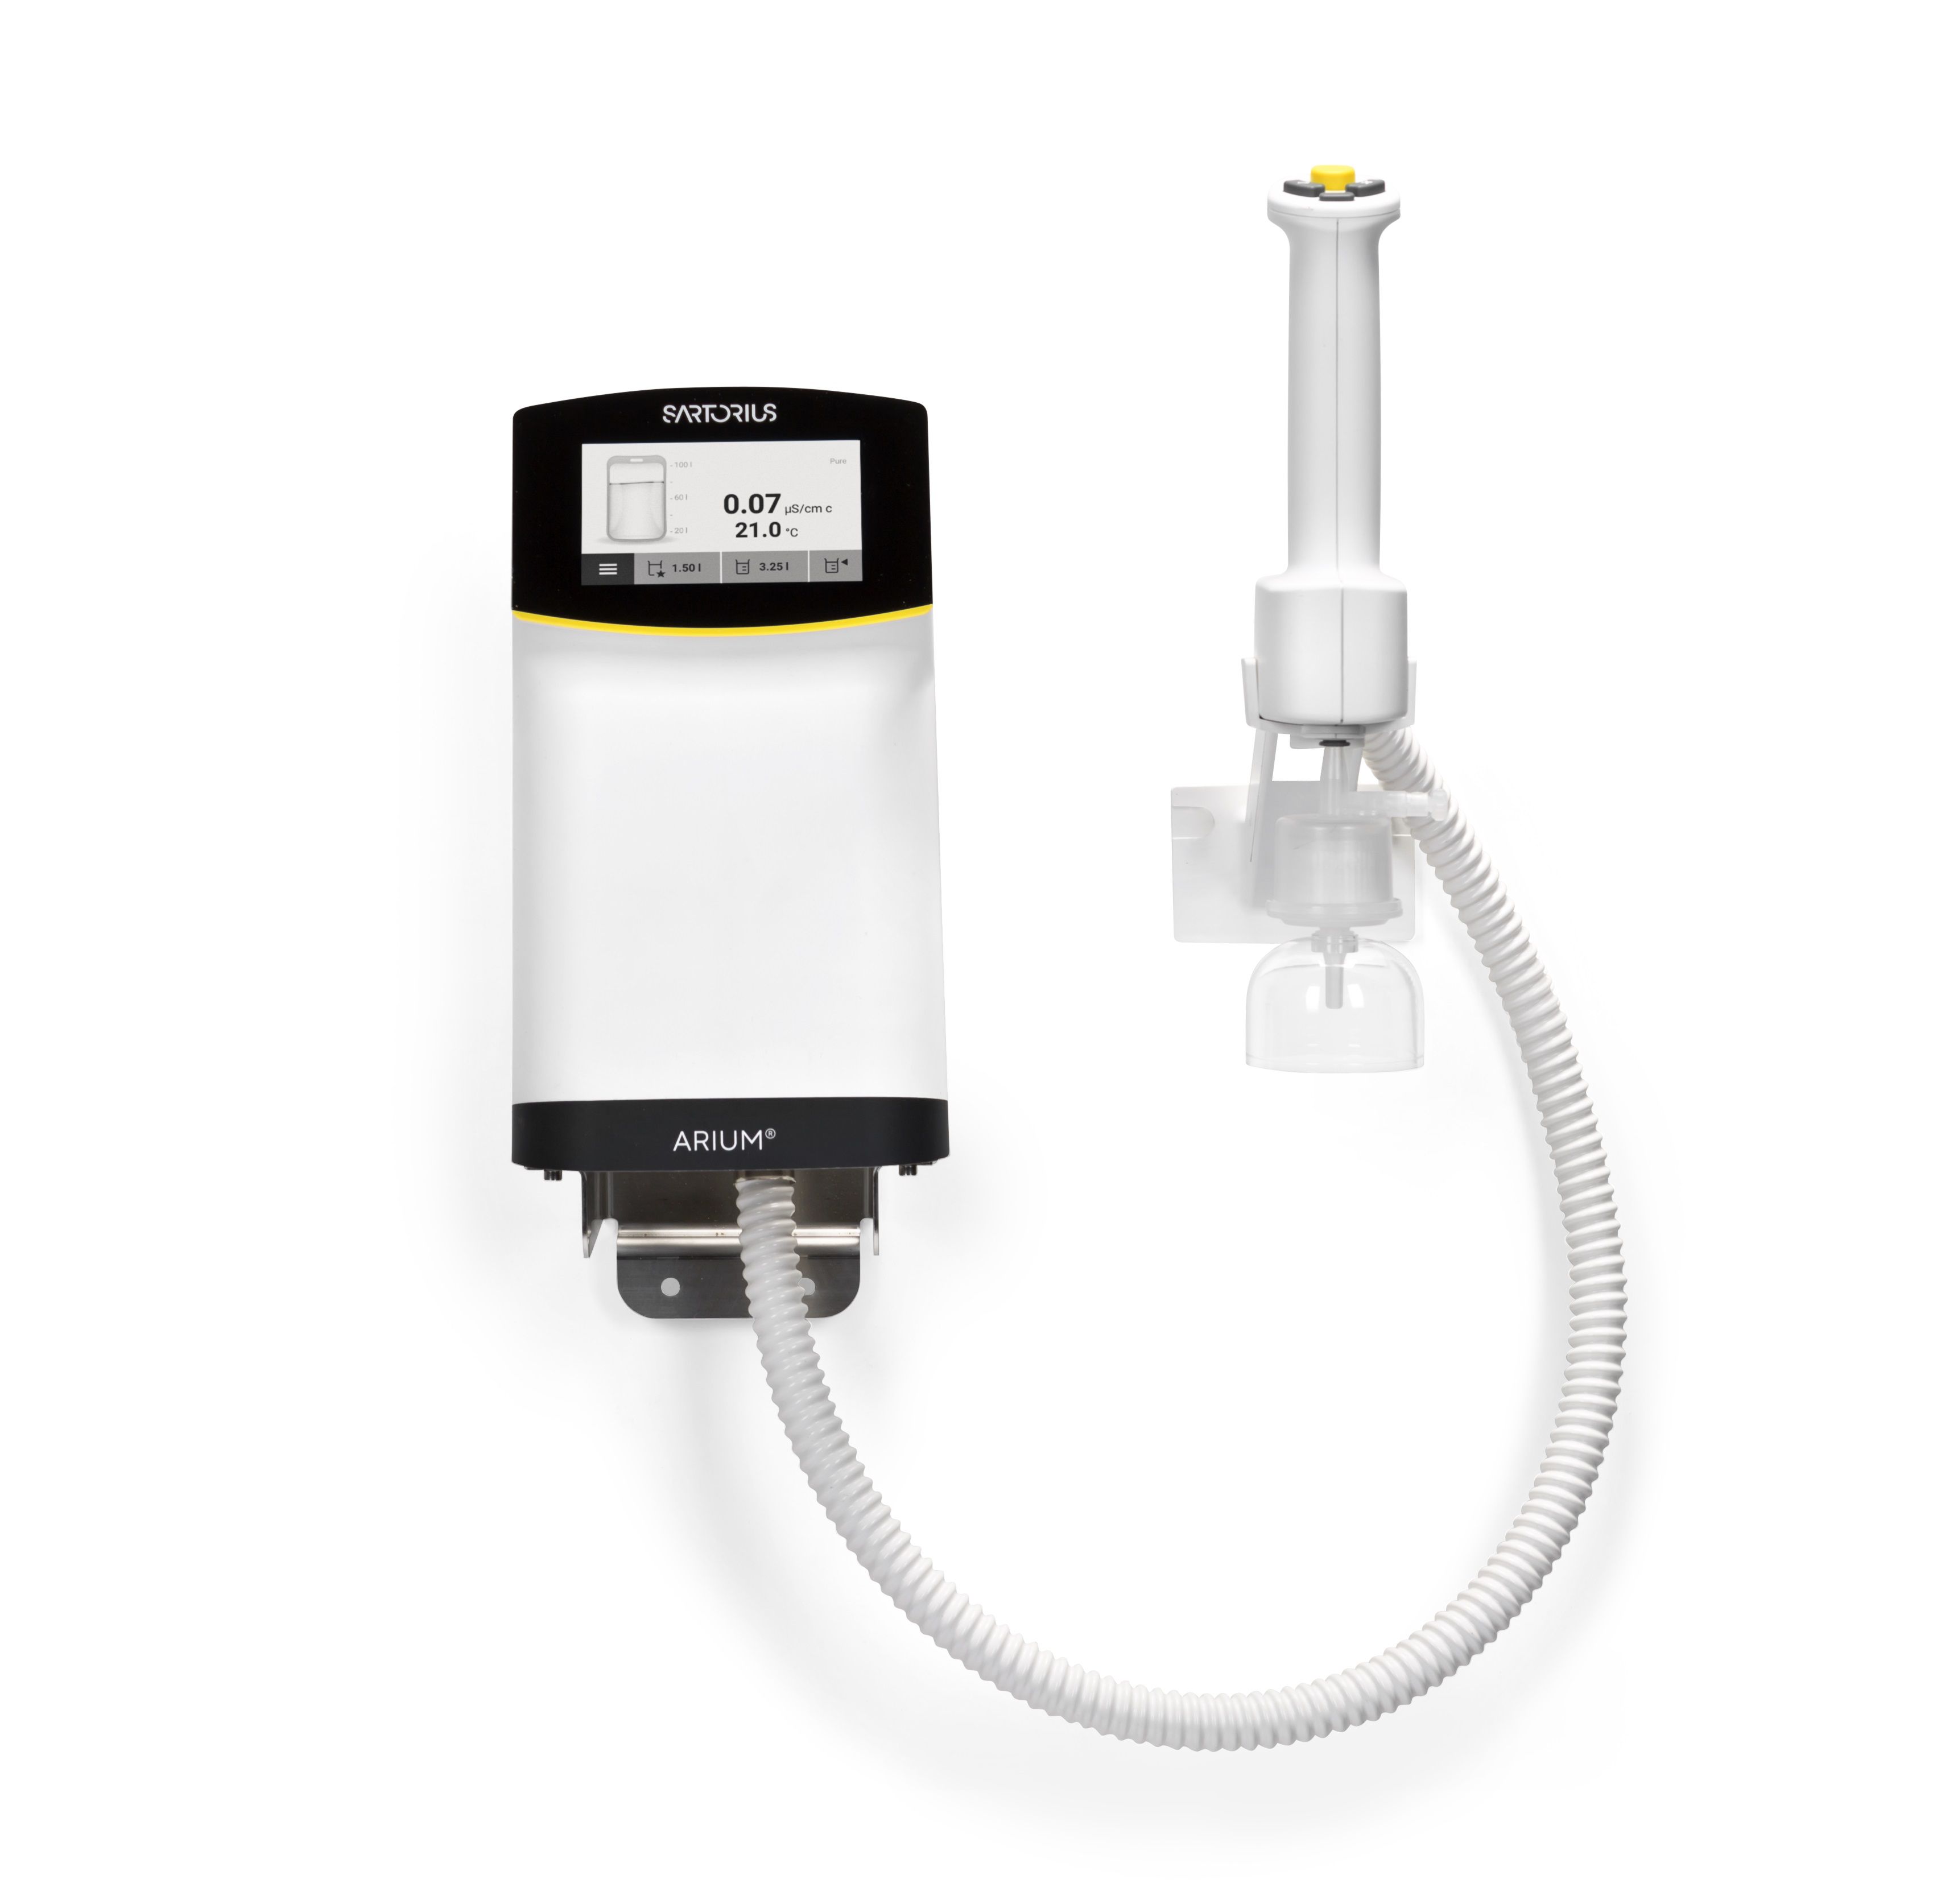 Arium® Smart Station “Bộ lấy nước thông minh” thế hệ mới của Sartorius được thiết kế hỗ trợ cho mang tính tiện ích cho các tác nghiệp trong phòng thí nghiệm